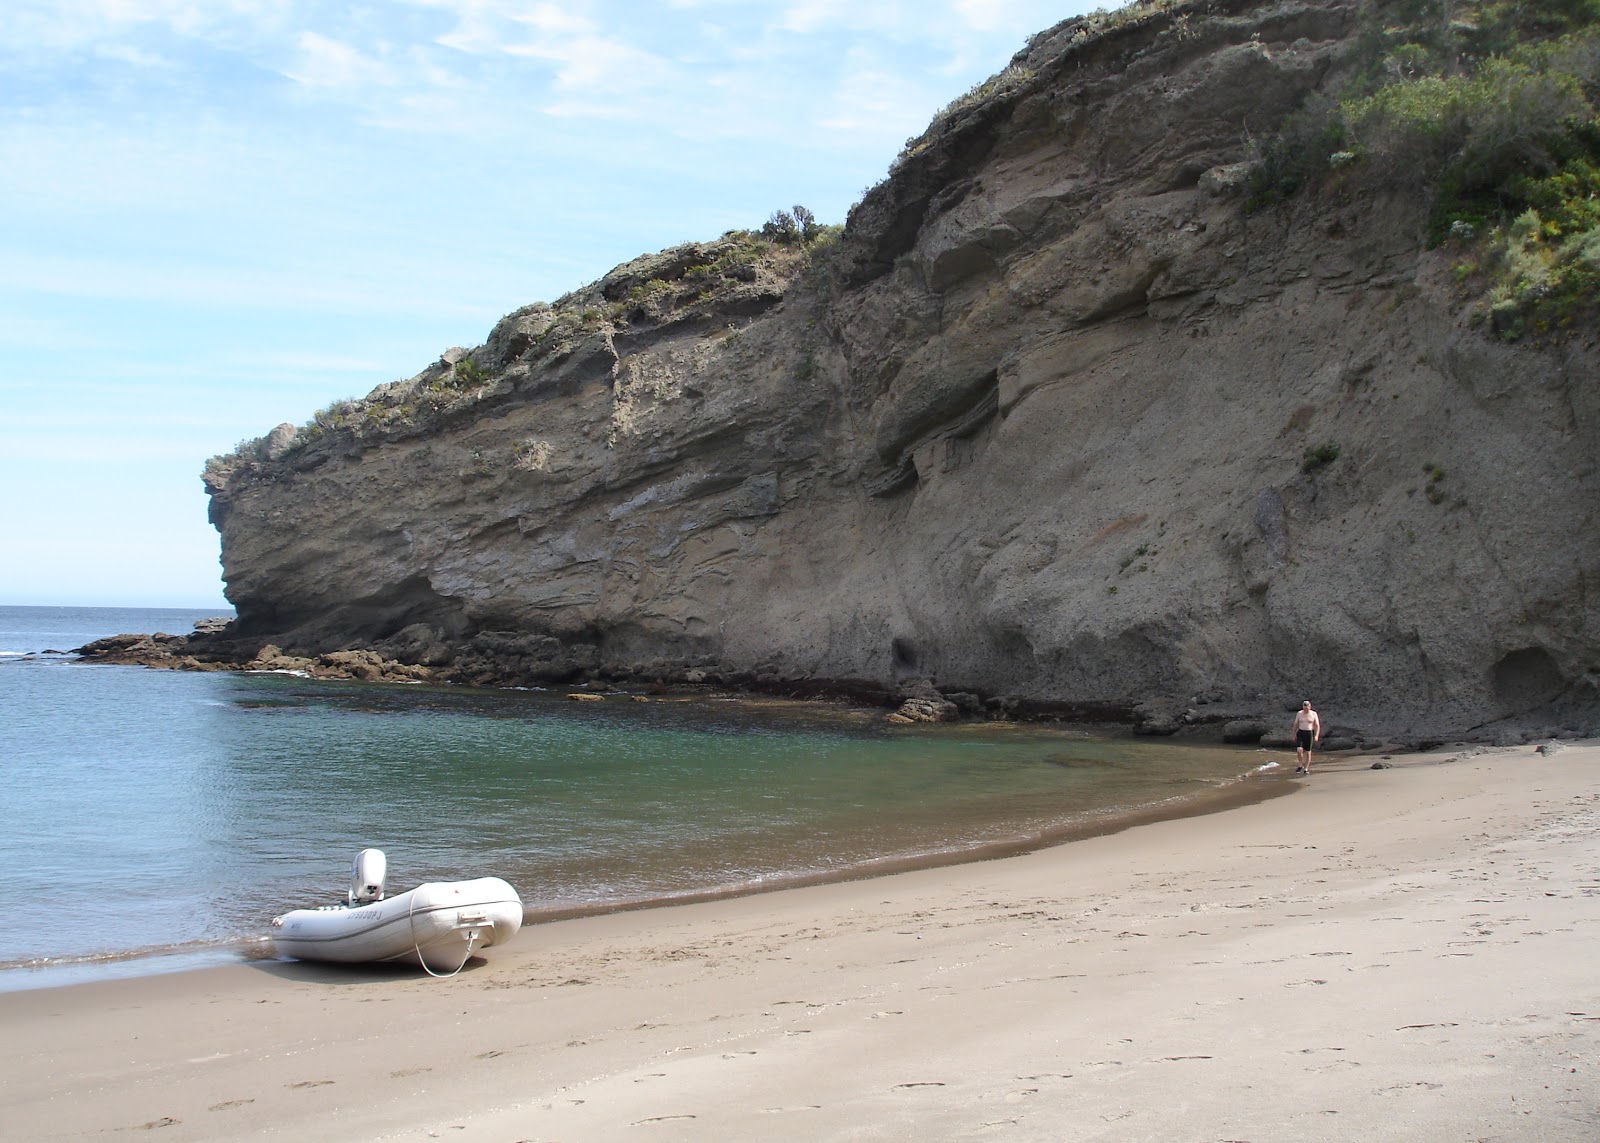 Fotografie cu Coches Prietos beach cu o suprafață de nisip strălucitor